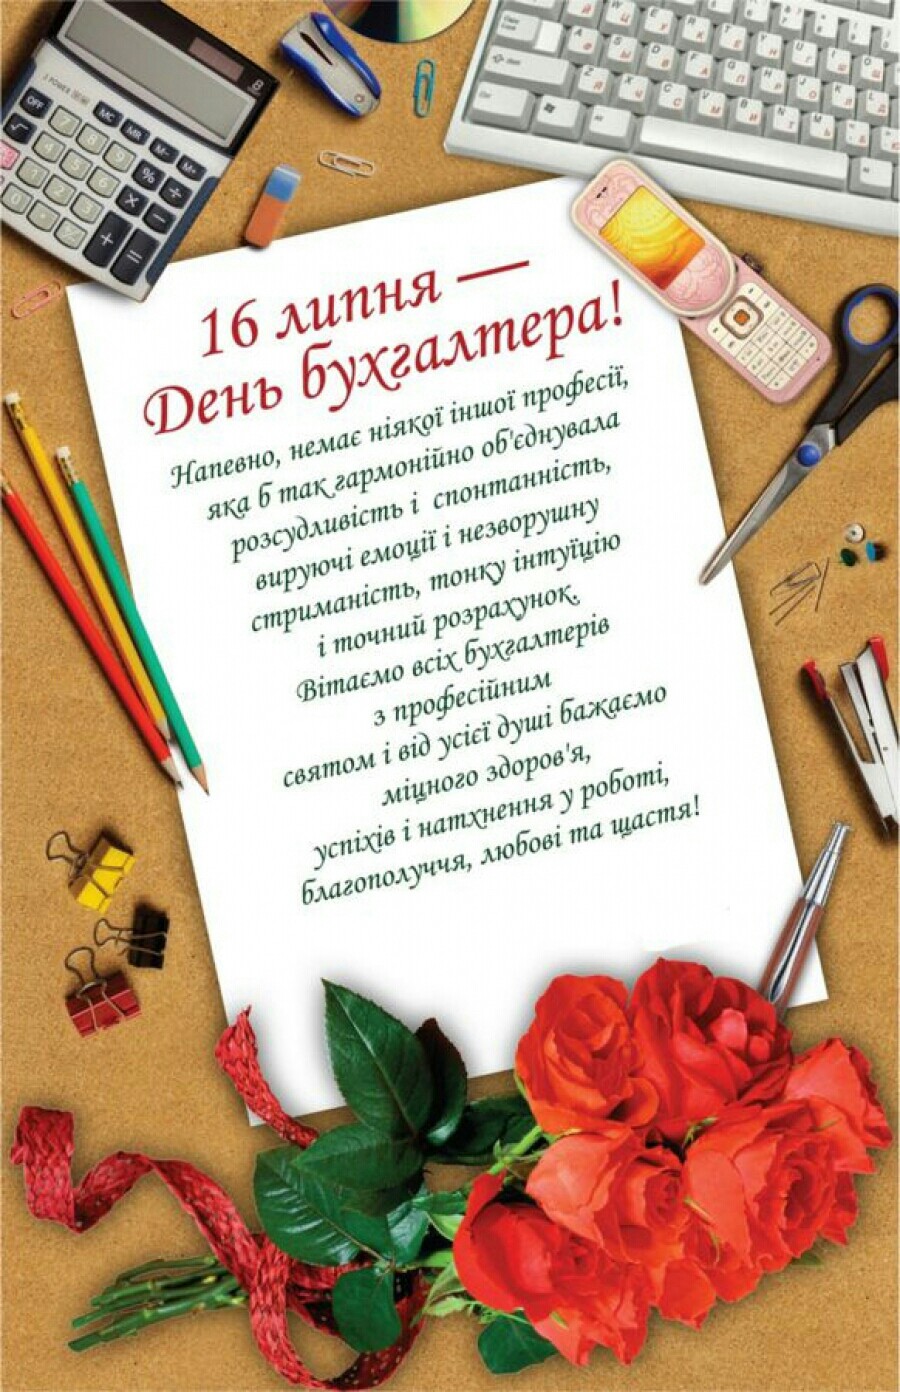 16 липня - День бухгалтера! Привітання з Днем бухгалтера на українській мові в прозі